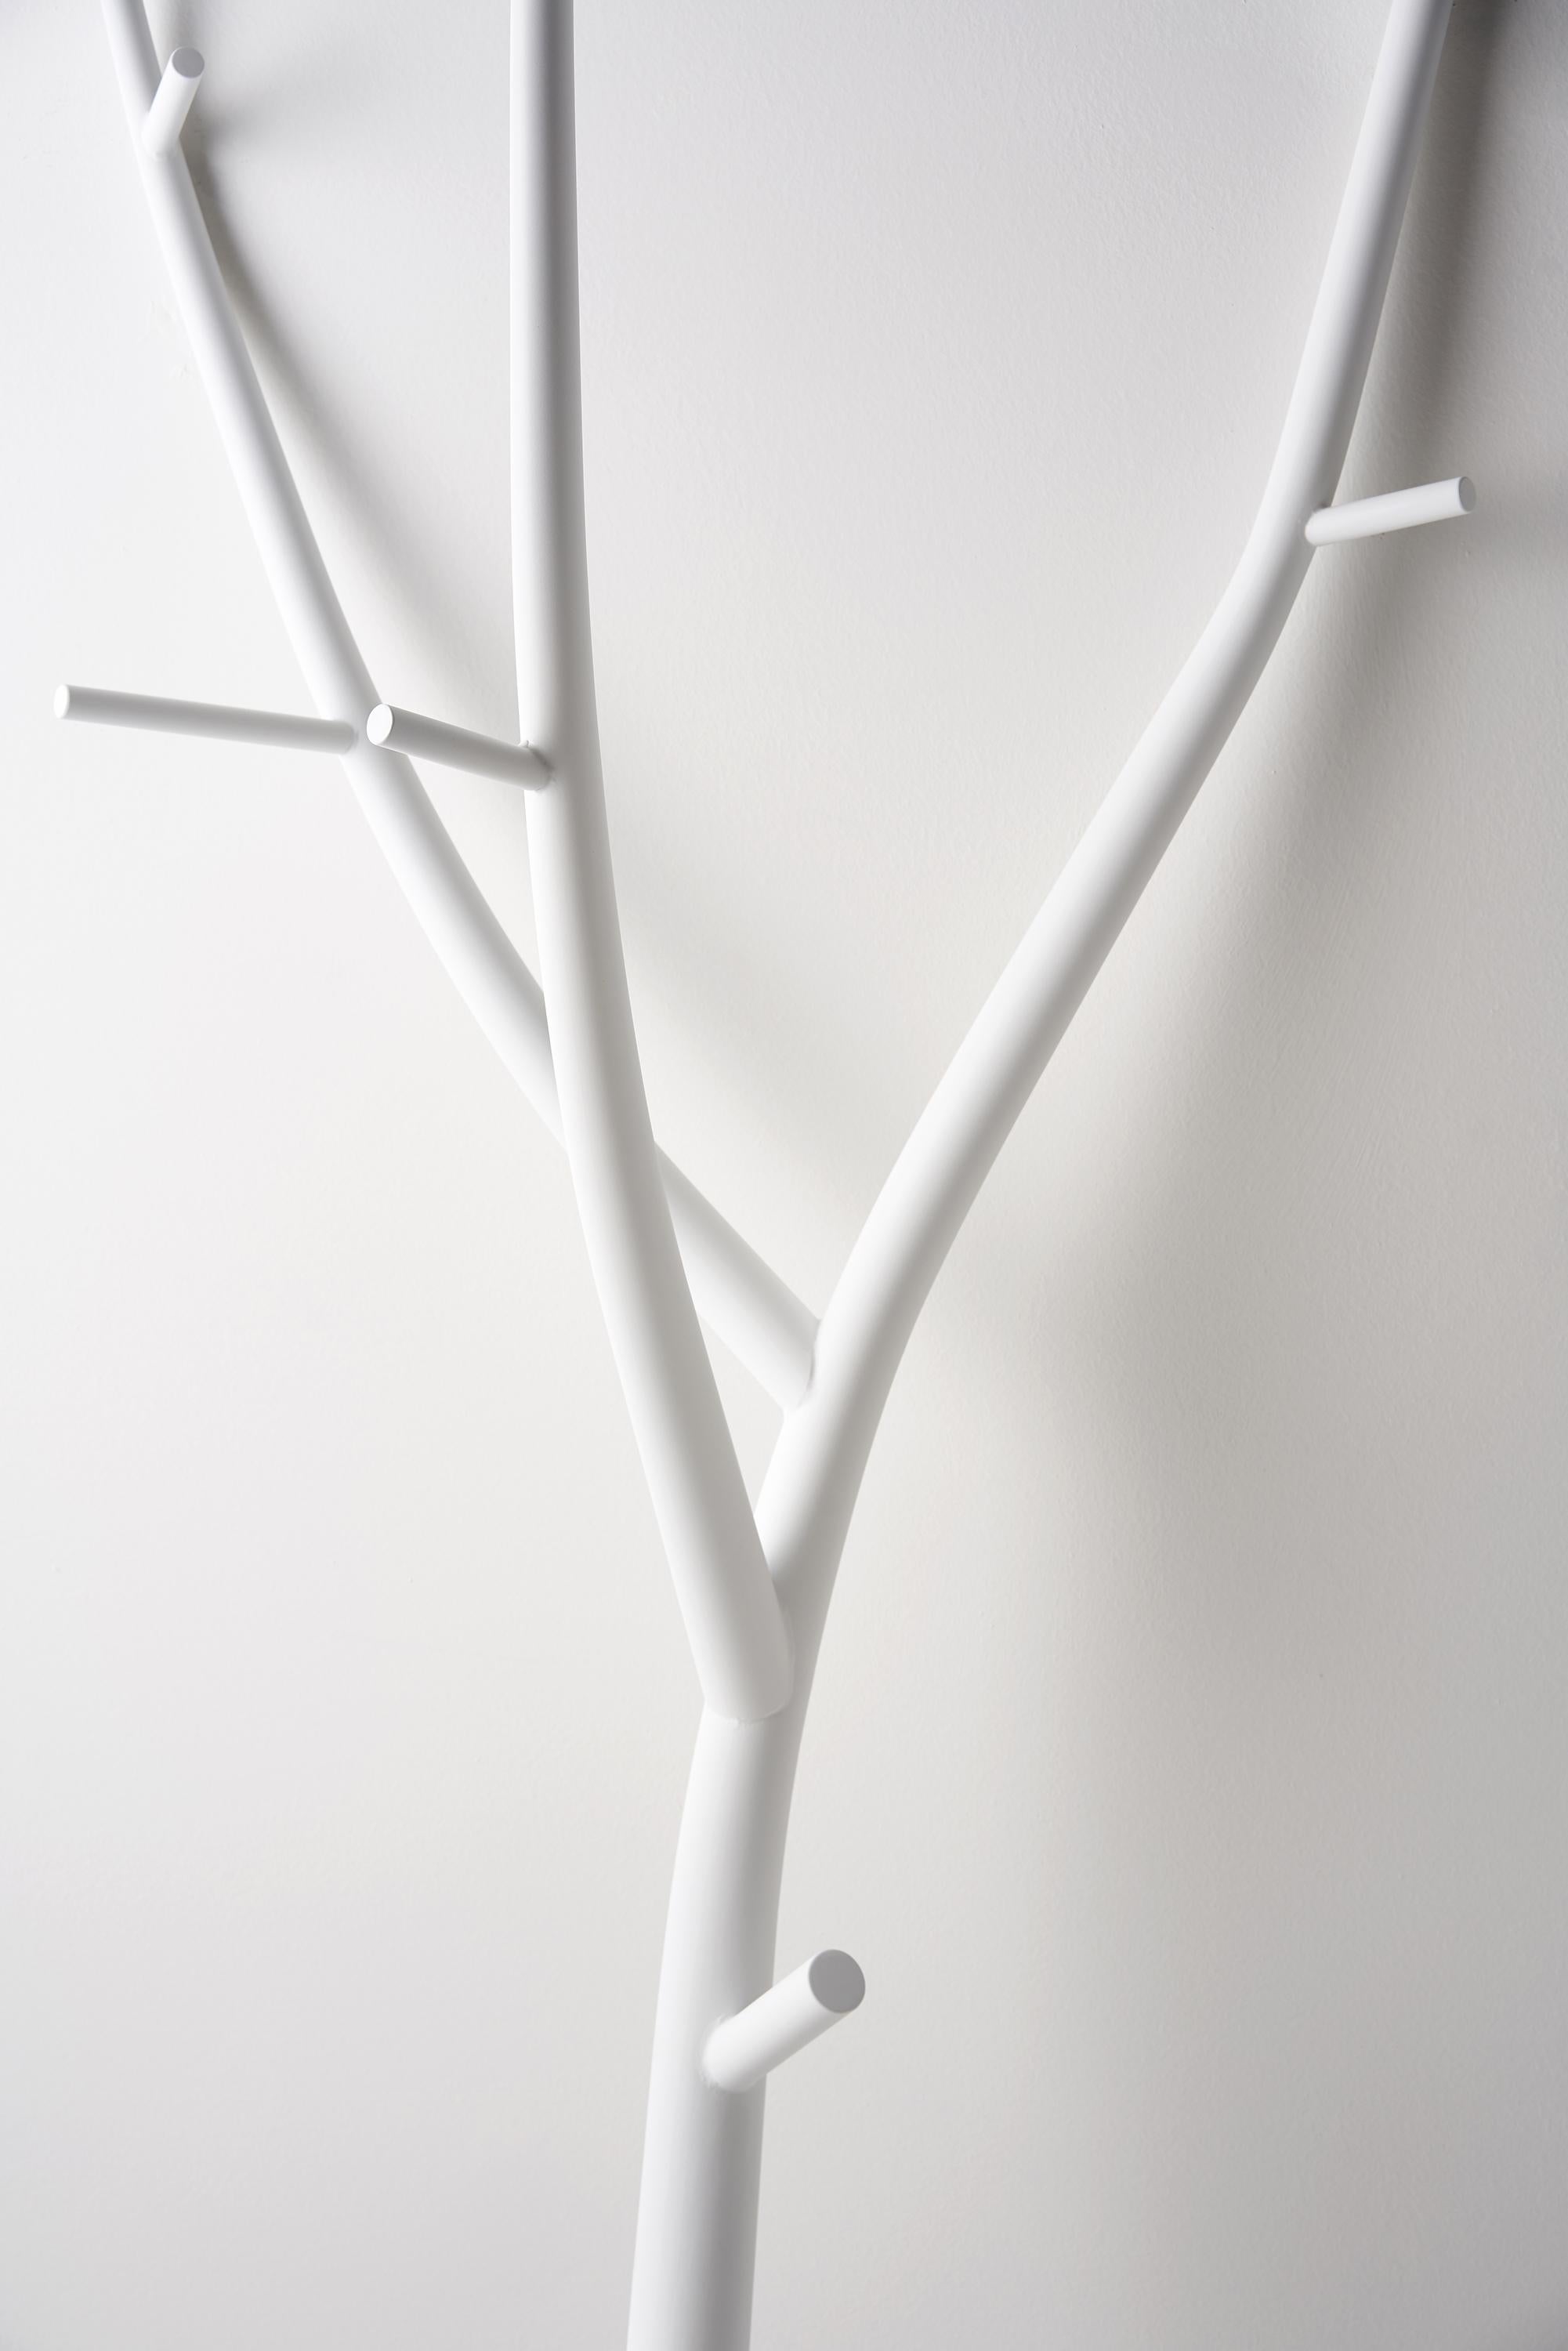 For Sale: White Opinion Ciatti Ramo Sculptural Coat Stand 2